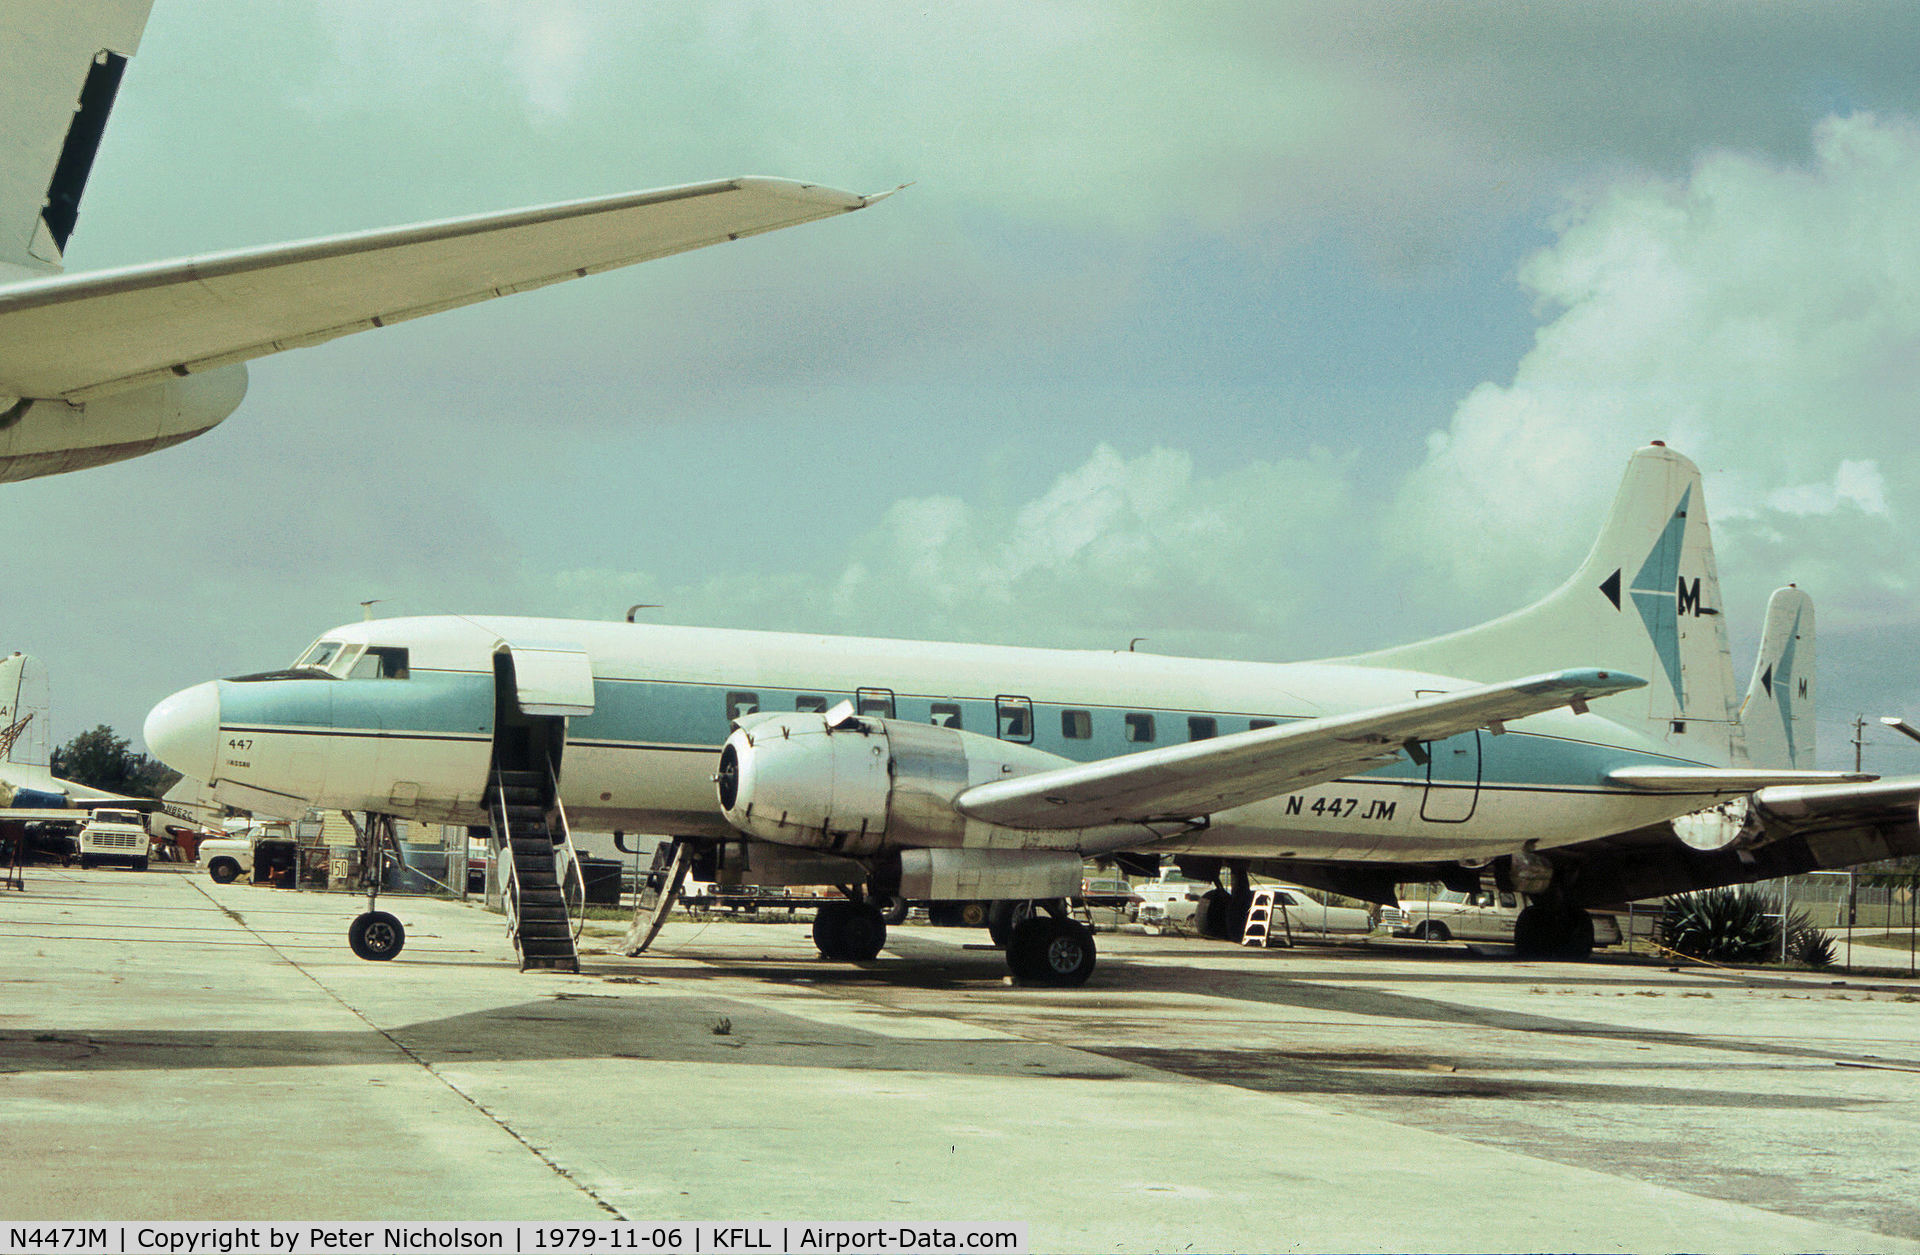 N447JM, 1957 Convair 440 Metropolitan C/N 420, Convair 440 named San Salvadore of Mackey International Airlines as seen at Fort Lauderdale in November 1979.